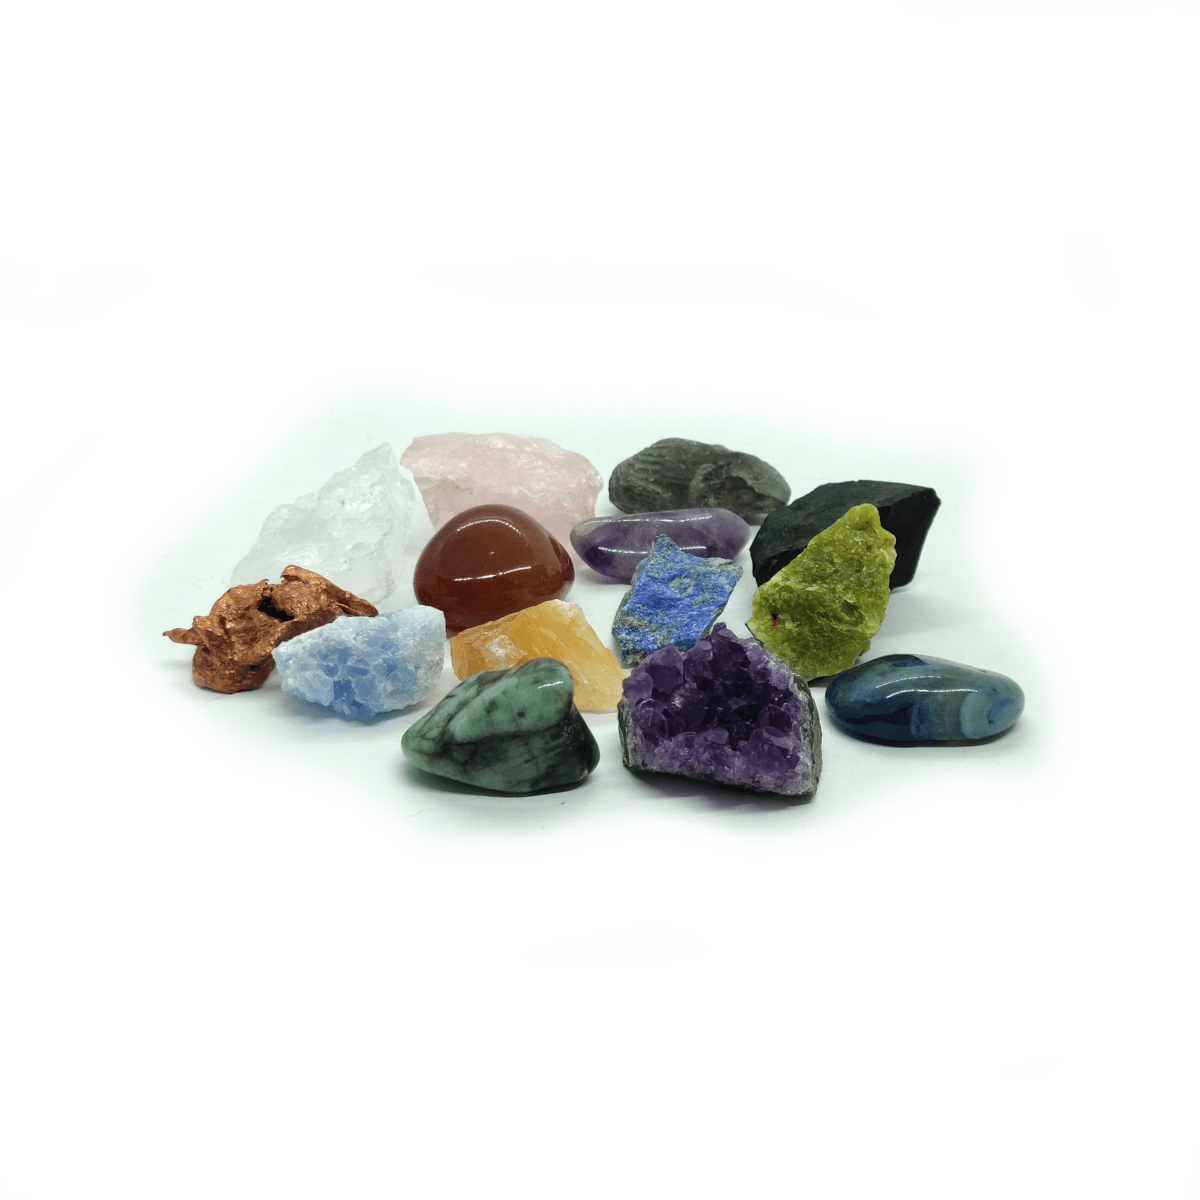 Verschiedene Kristalle, Trommelsteine, Rohsteine & Mineralien in bunten Farben.